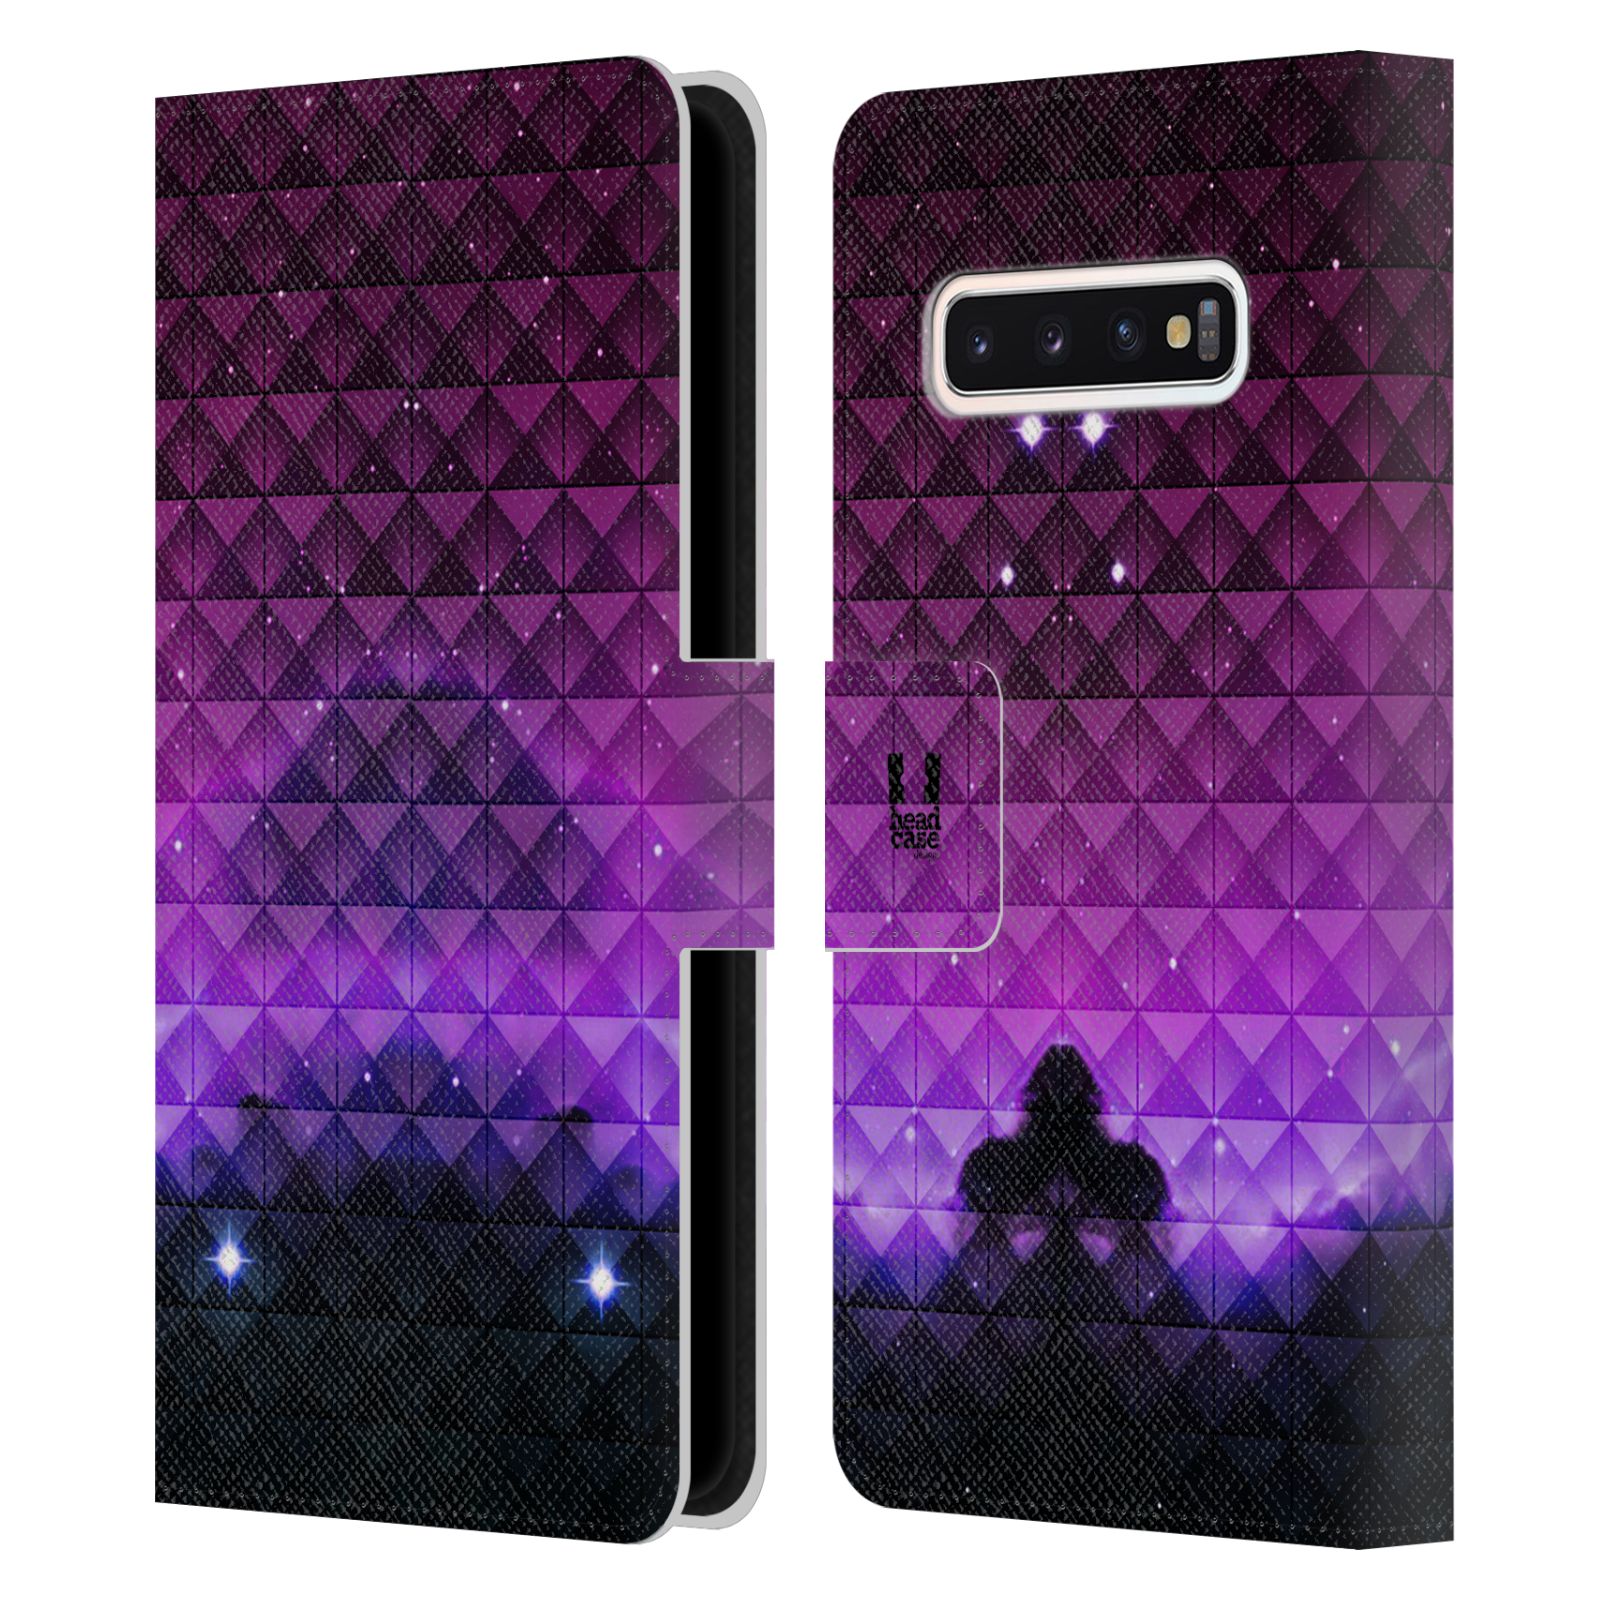 Pouzdro HEAD CASE na mobil Samsung Galaxy S10 barevná vesmírná mlhovina fialová a černá